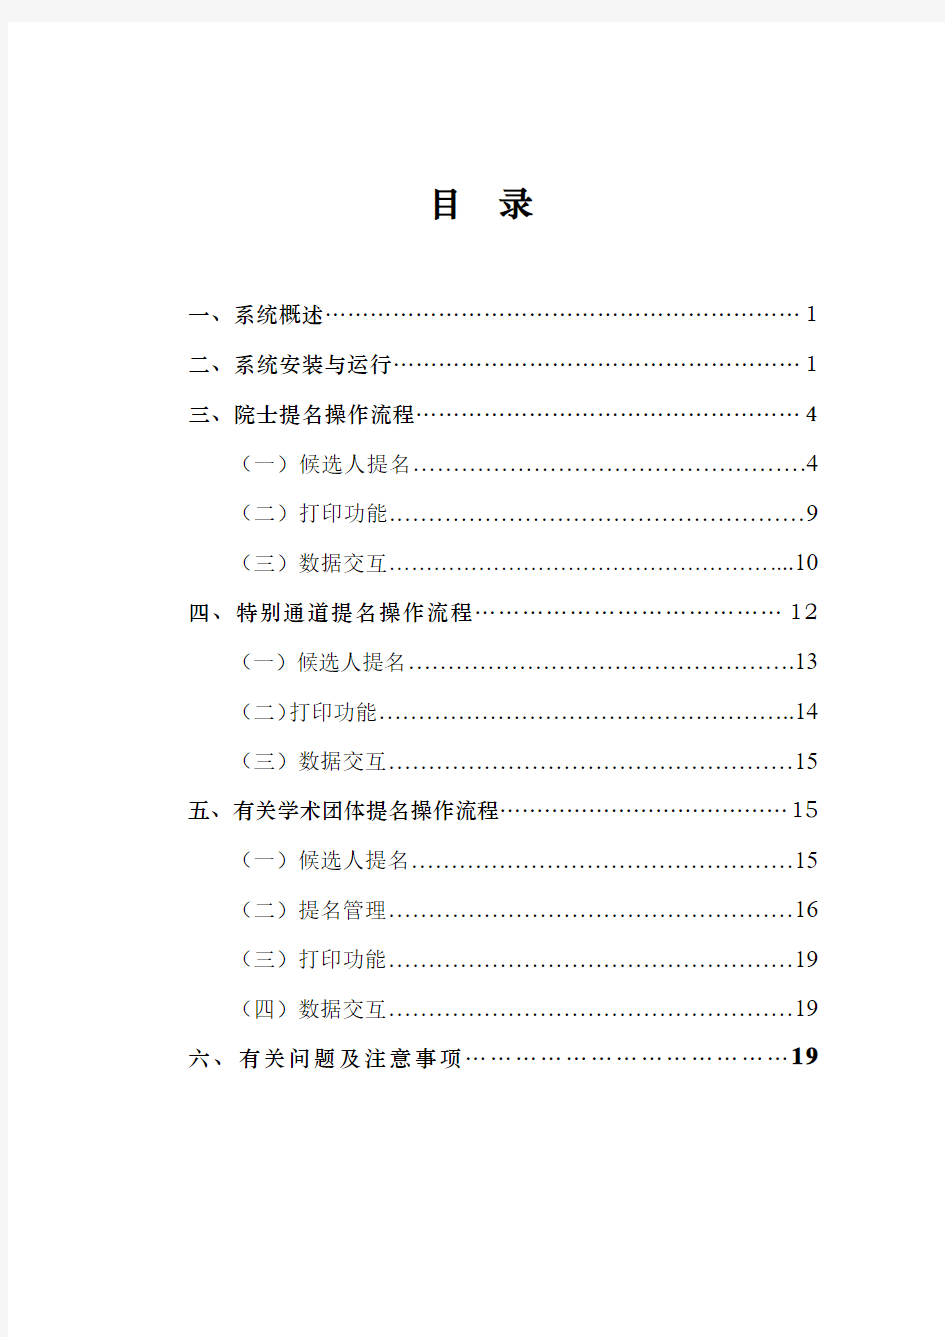 中国工程院院士候选人提名系统使用说明书-中国电子学会